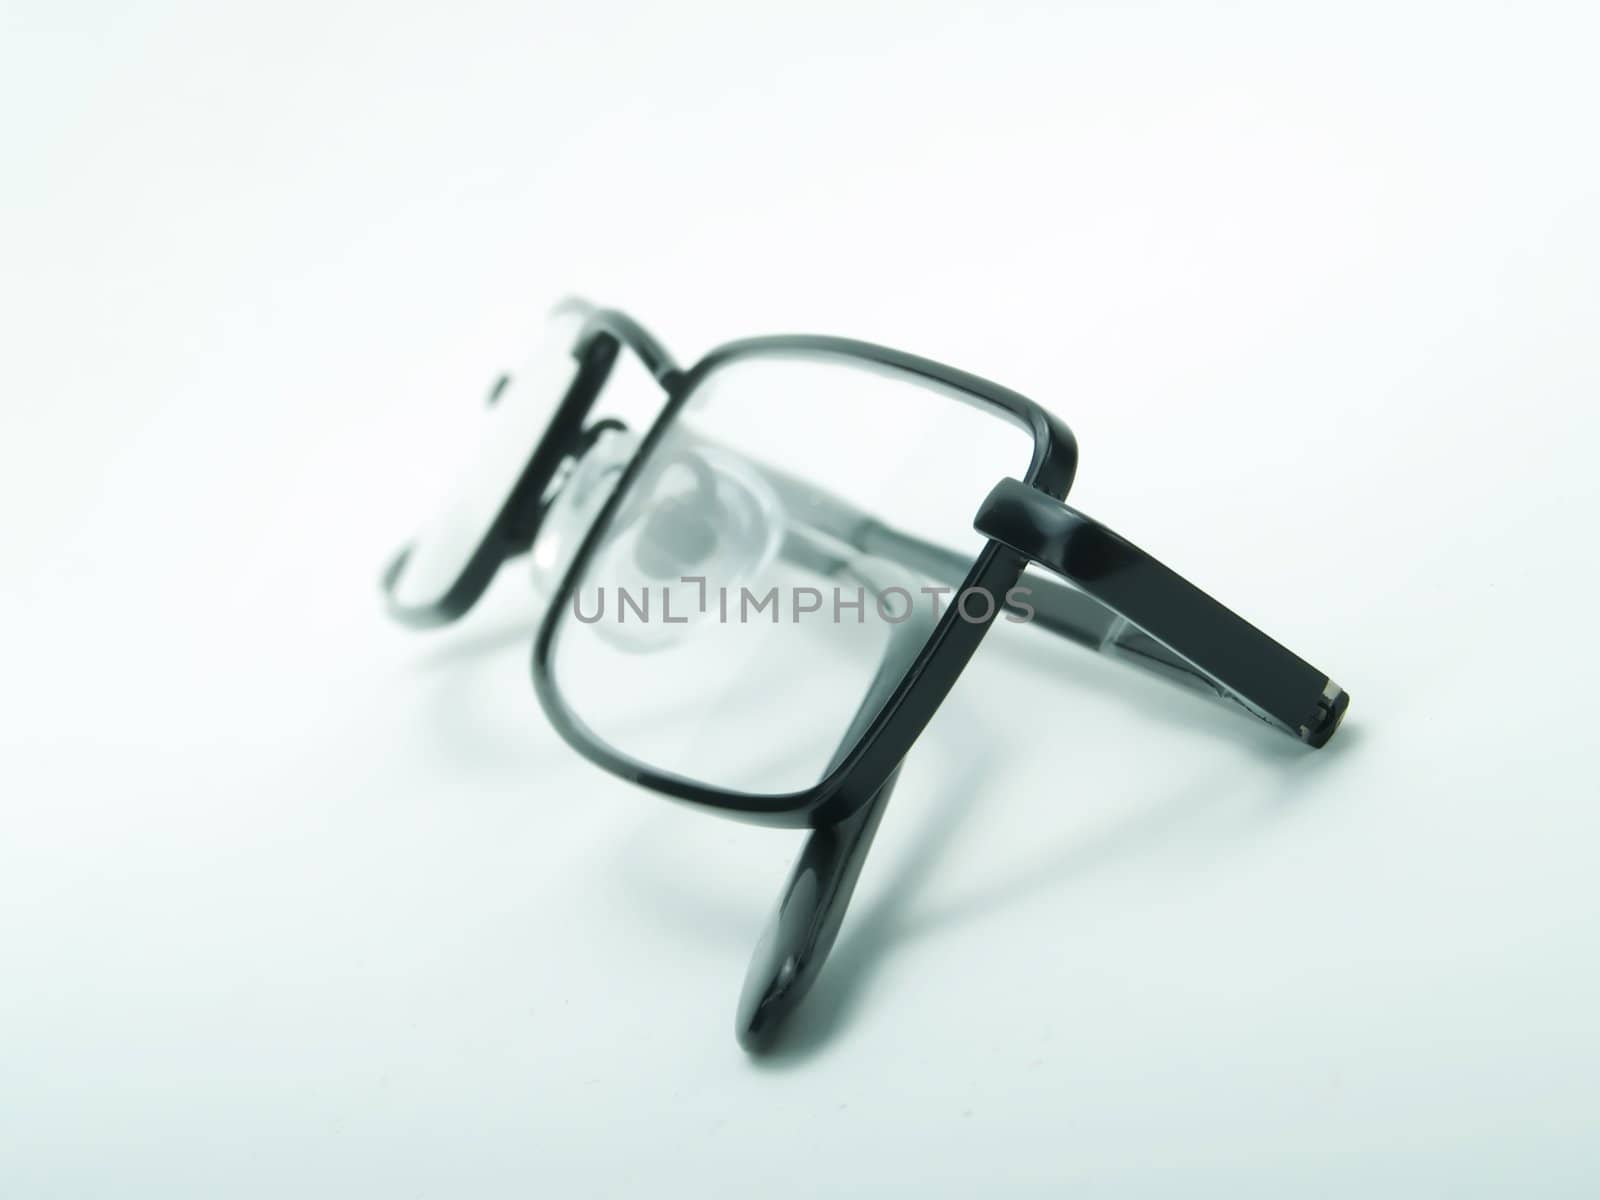 Eyeglasses by henrischmit